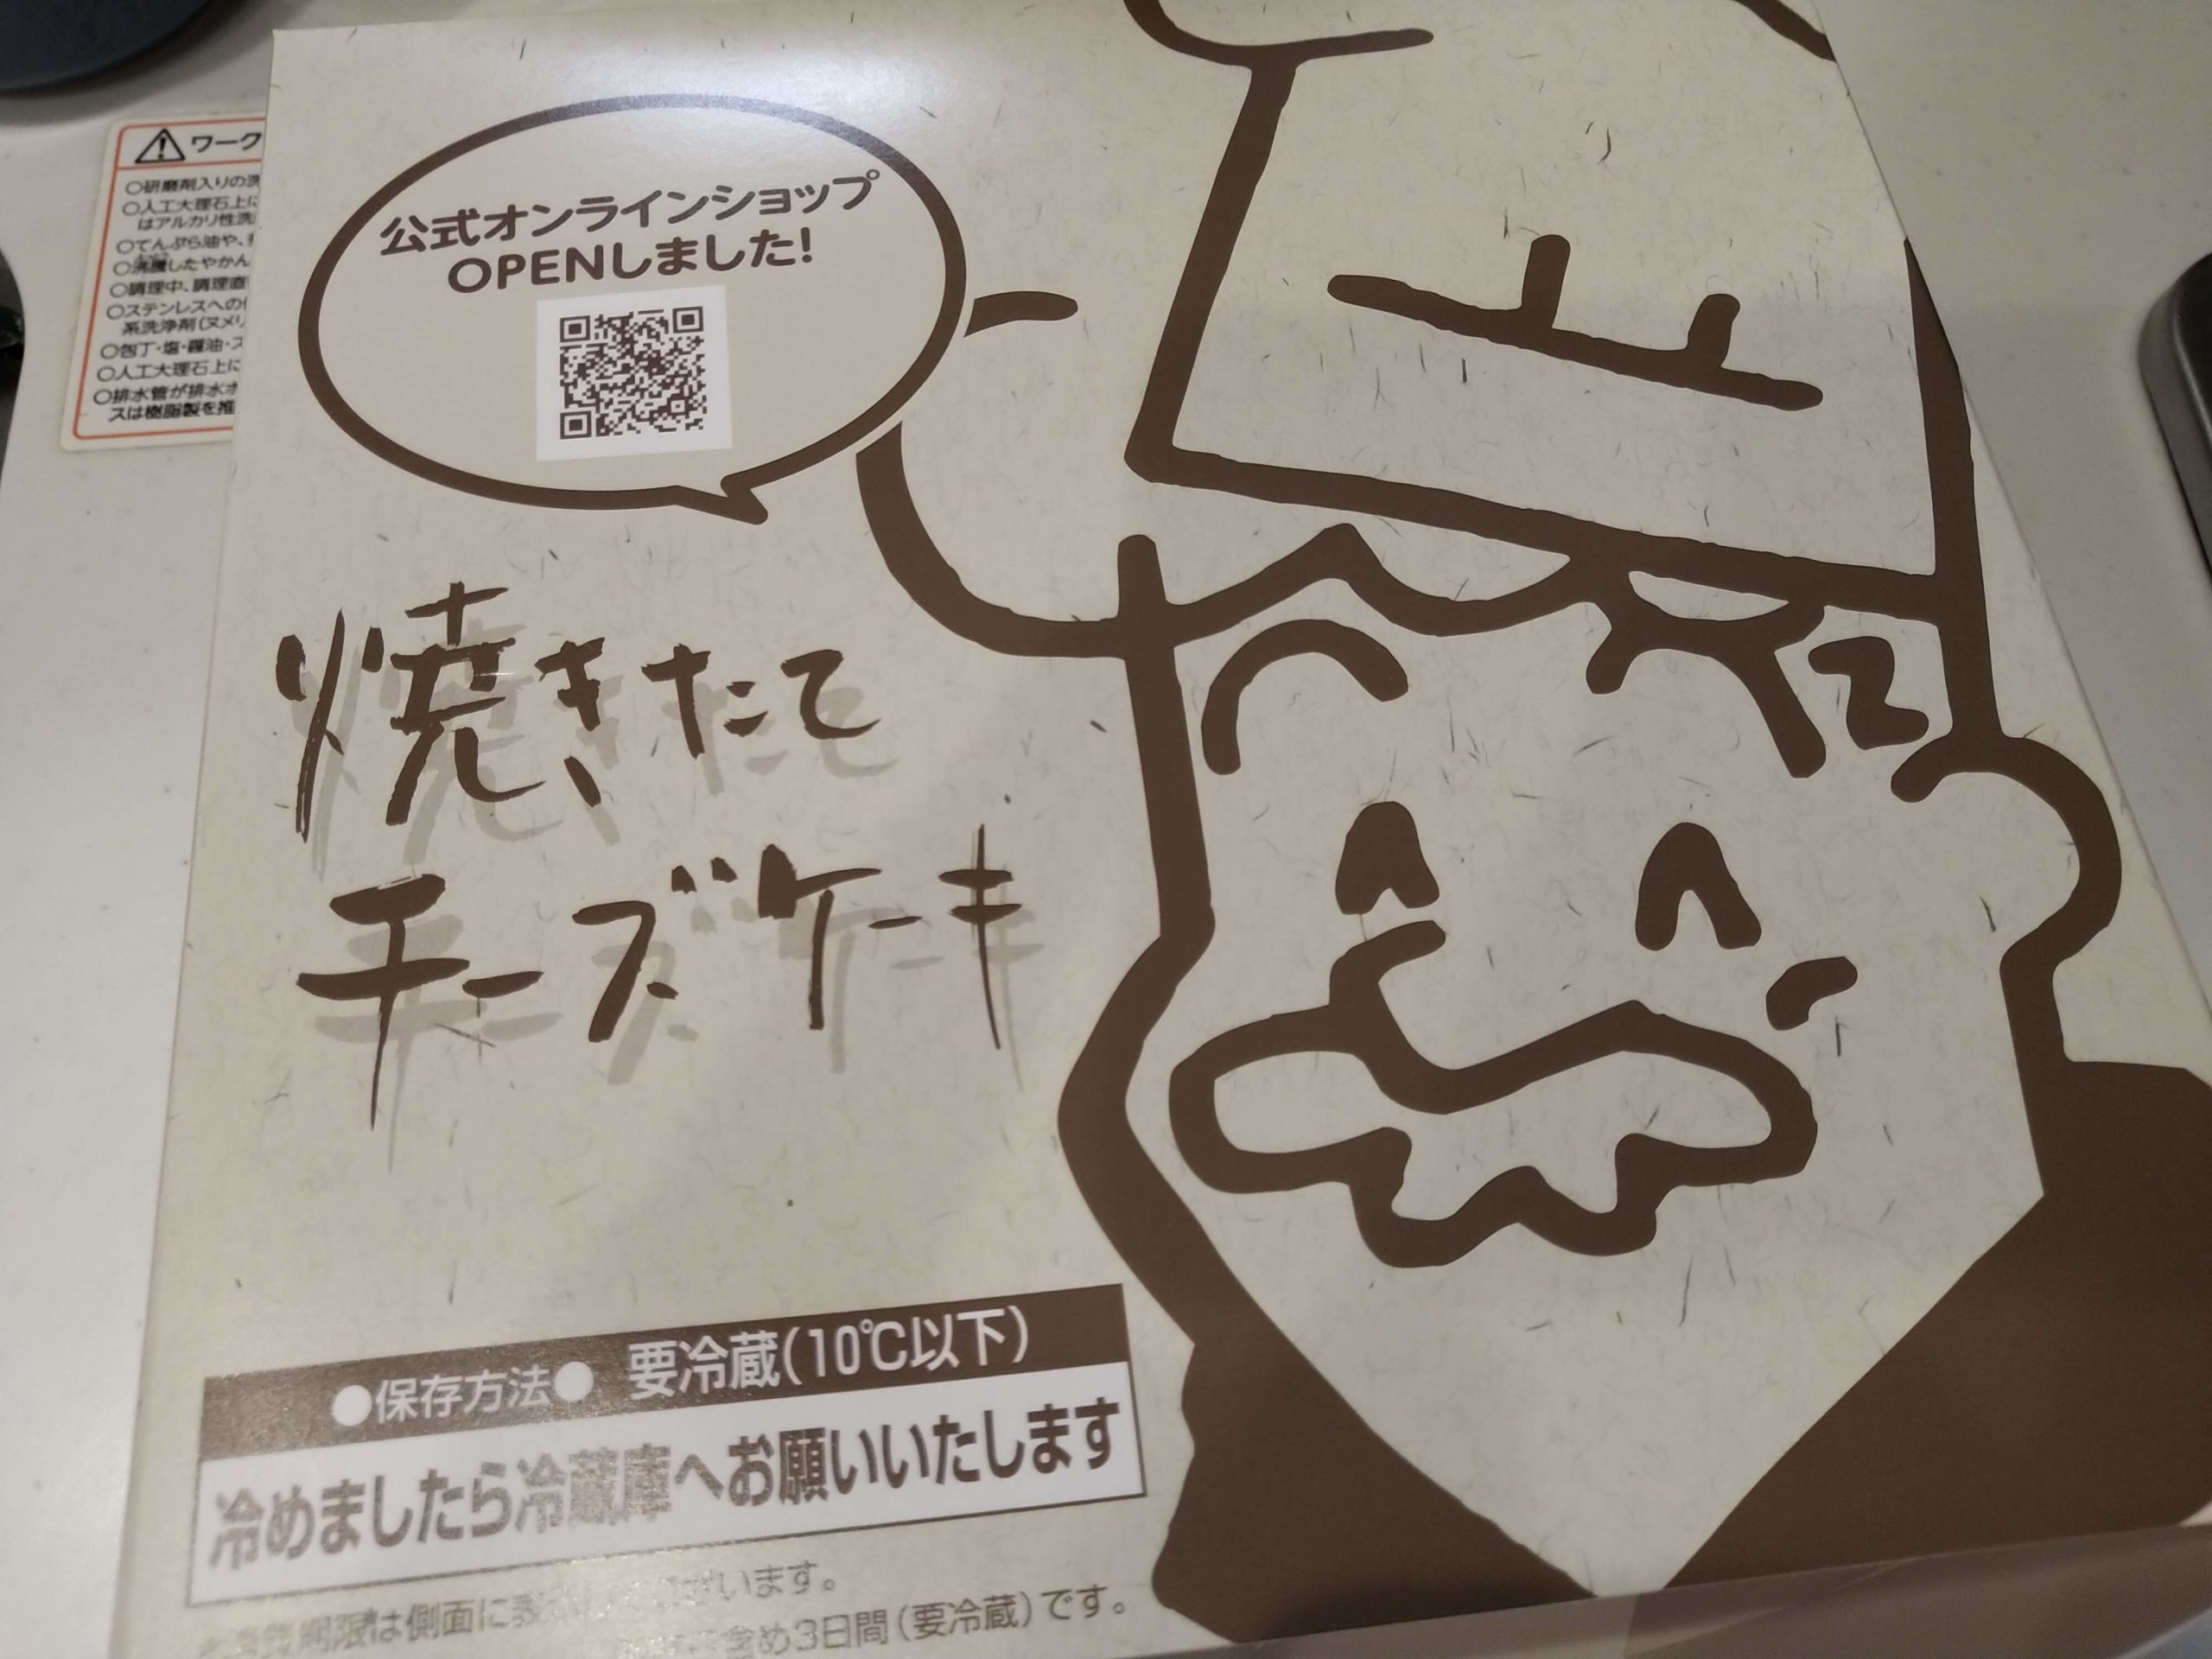 大阪 新しいお土産 りくろーおじさんの店 でチーズケーキを新大阪駅改札内で買える 京都ストーリー